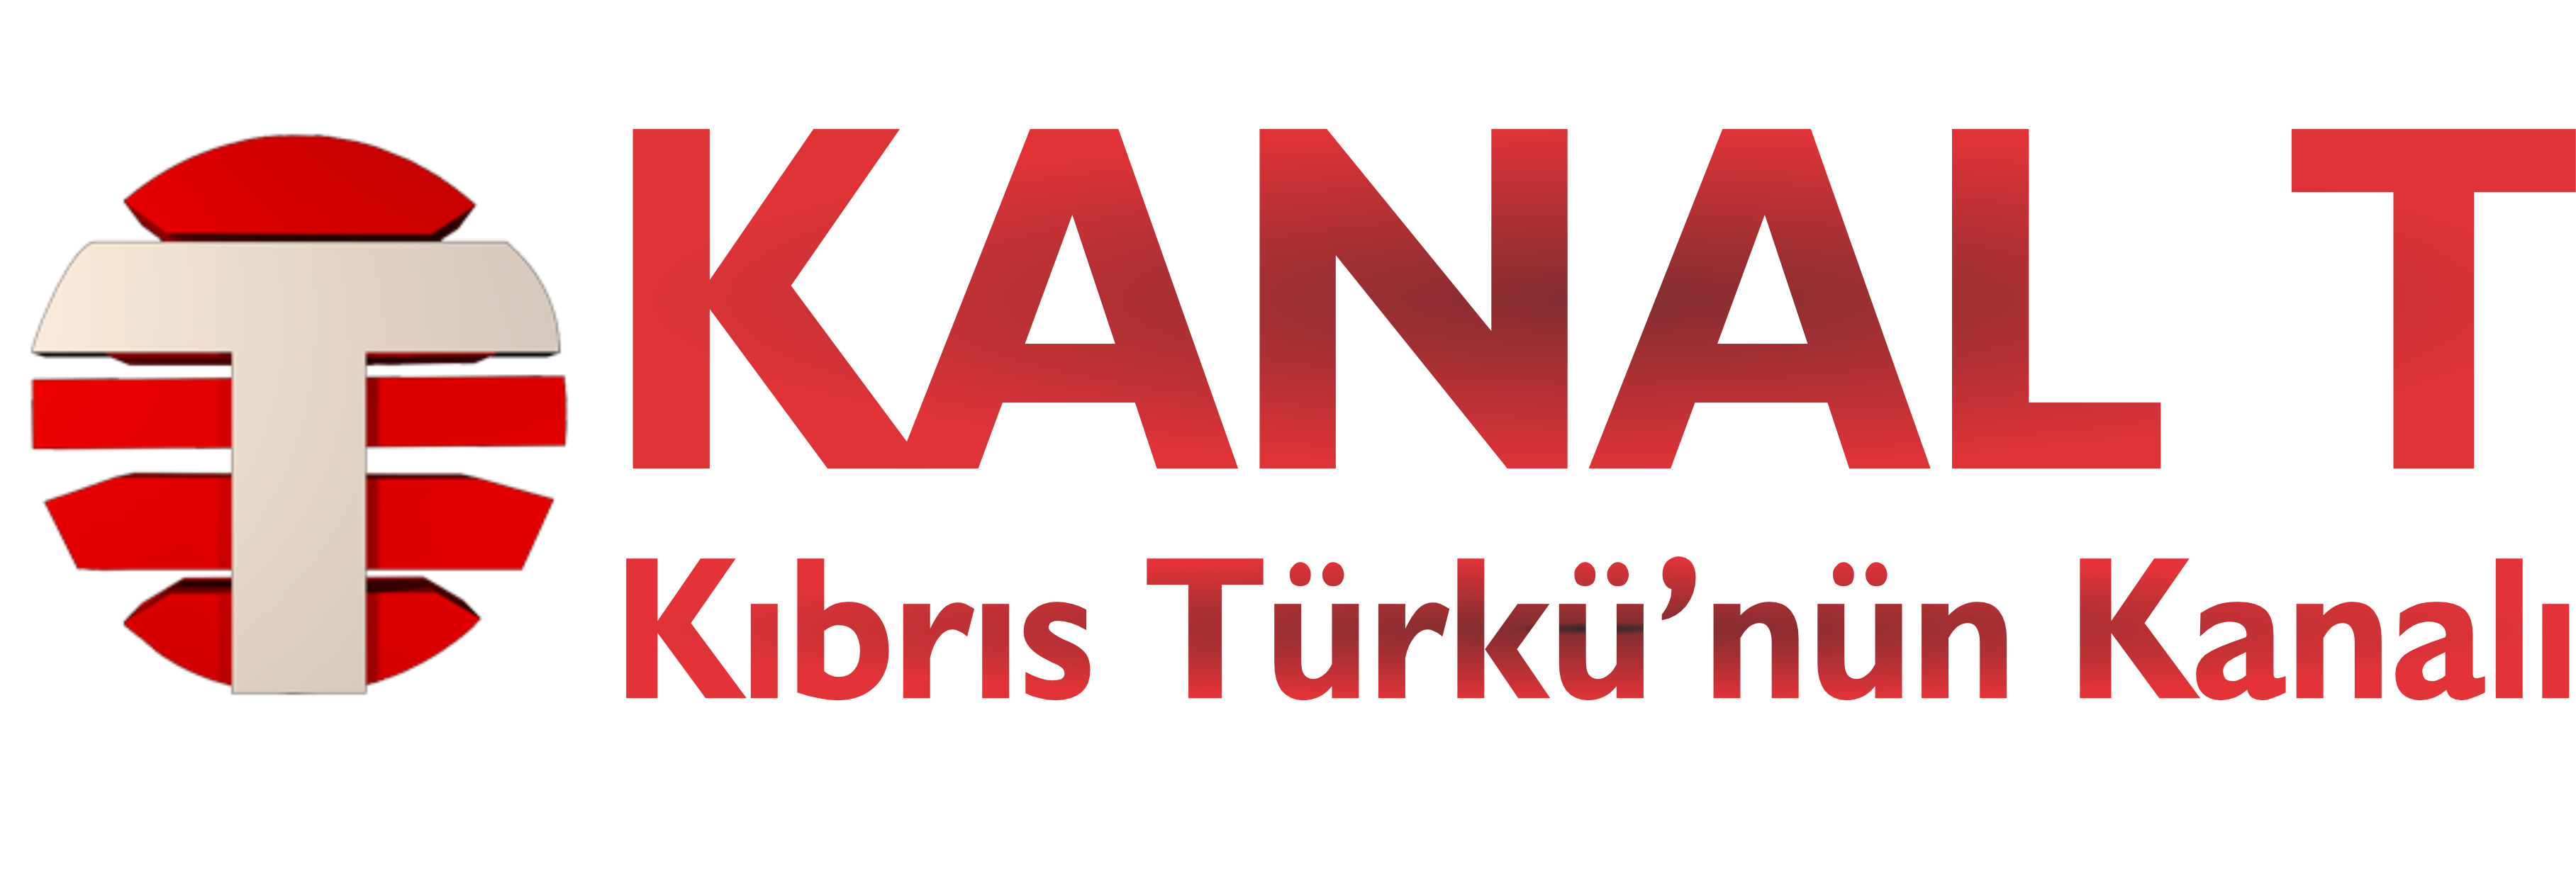 KANAL T - Kıbrıs Türkü'nün Kanalı